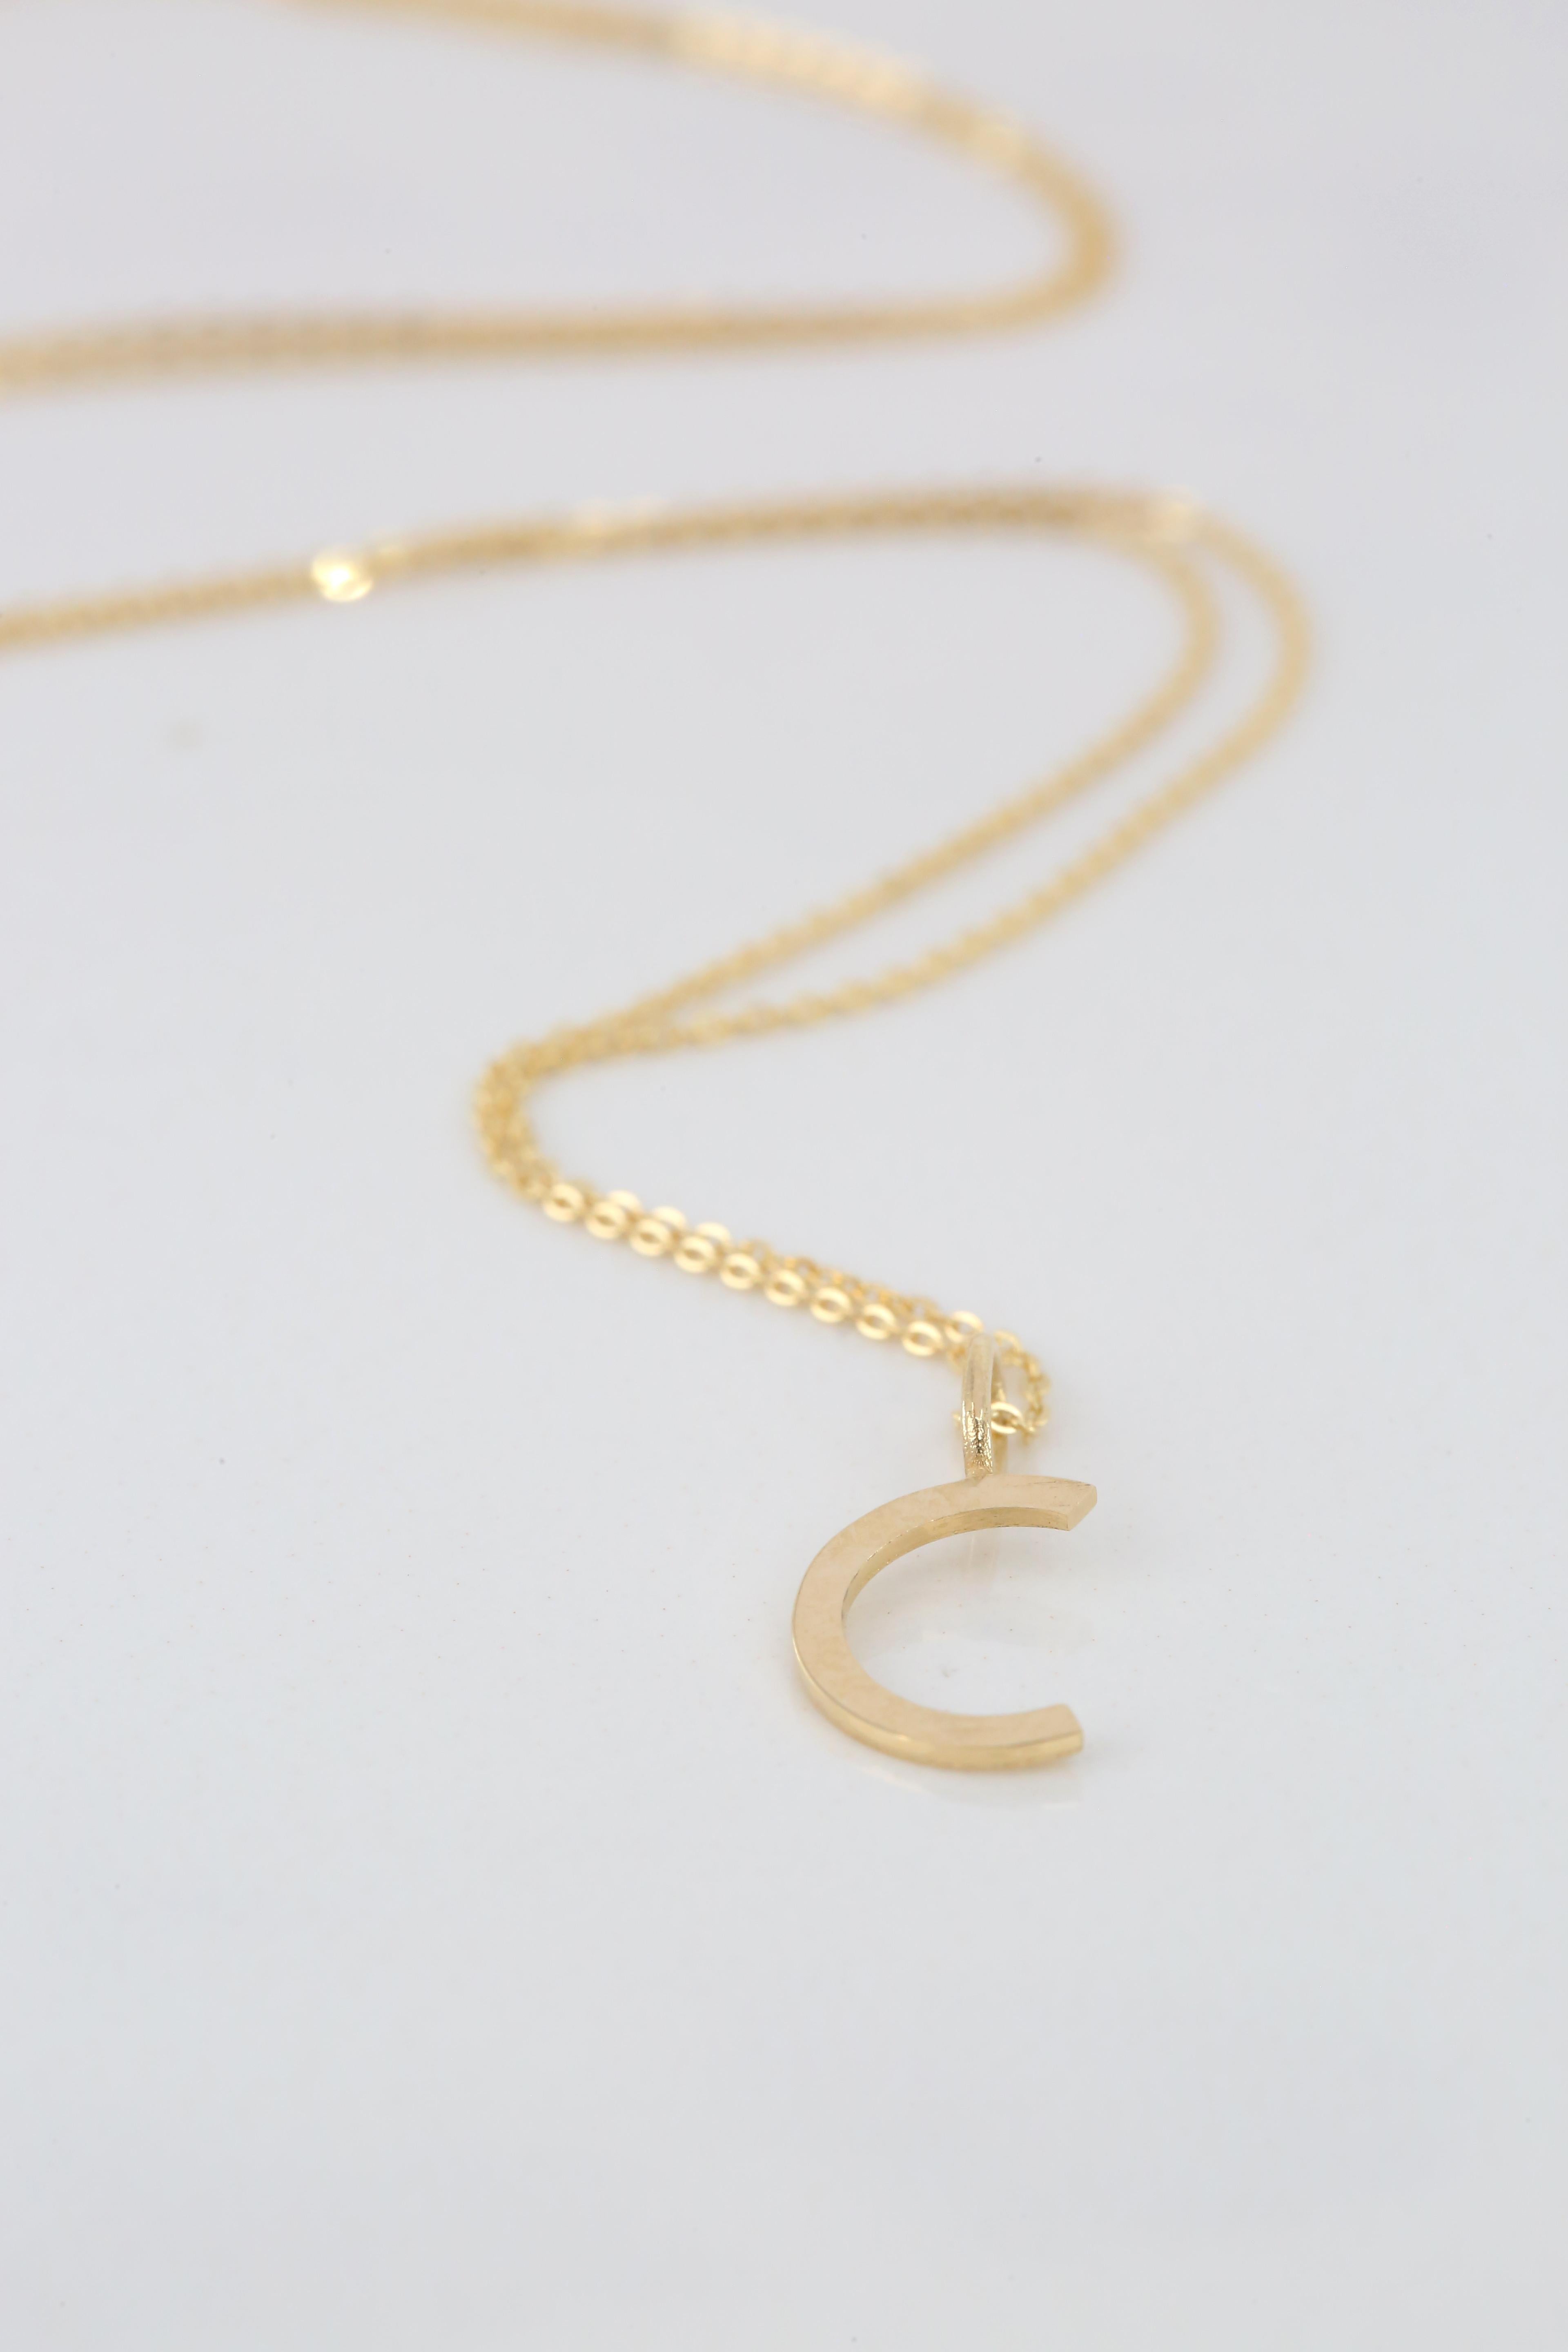 Modern 14k Gold Necklaces, Letter Necklace Models, Letter C Gold Necklace-Gift Necklace For Sale